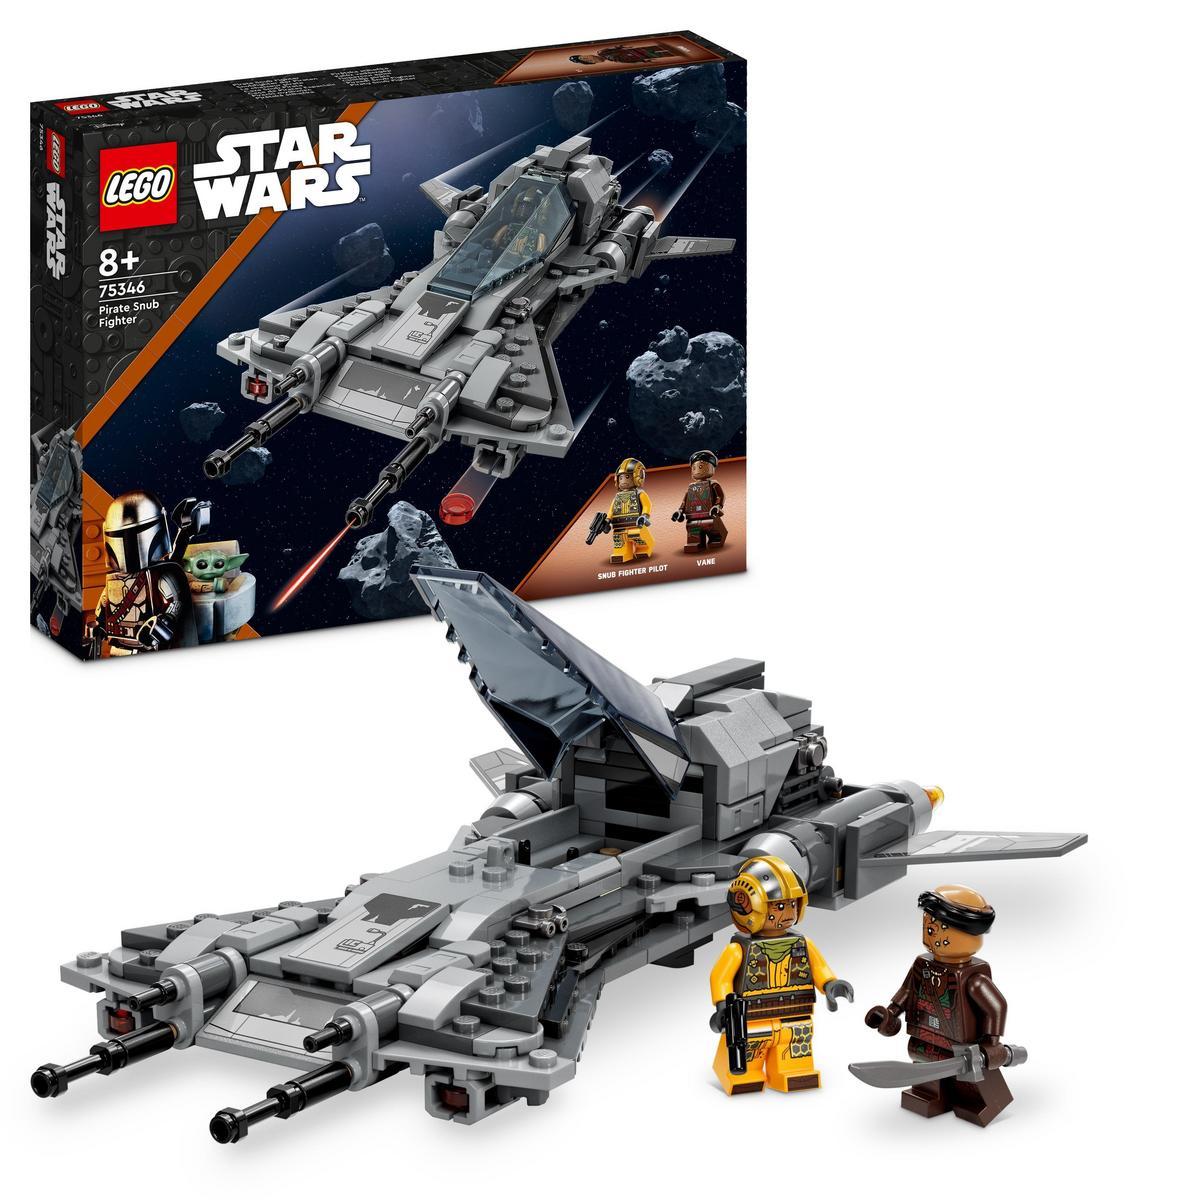 LEGO - Set de juguetes de construcción LEGO® Star Wars™ 75346 Caza Snub Pirata; caza estelar construible; idea de regalo para niños y niñas a partir de 8 años (285 piezas)